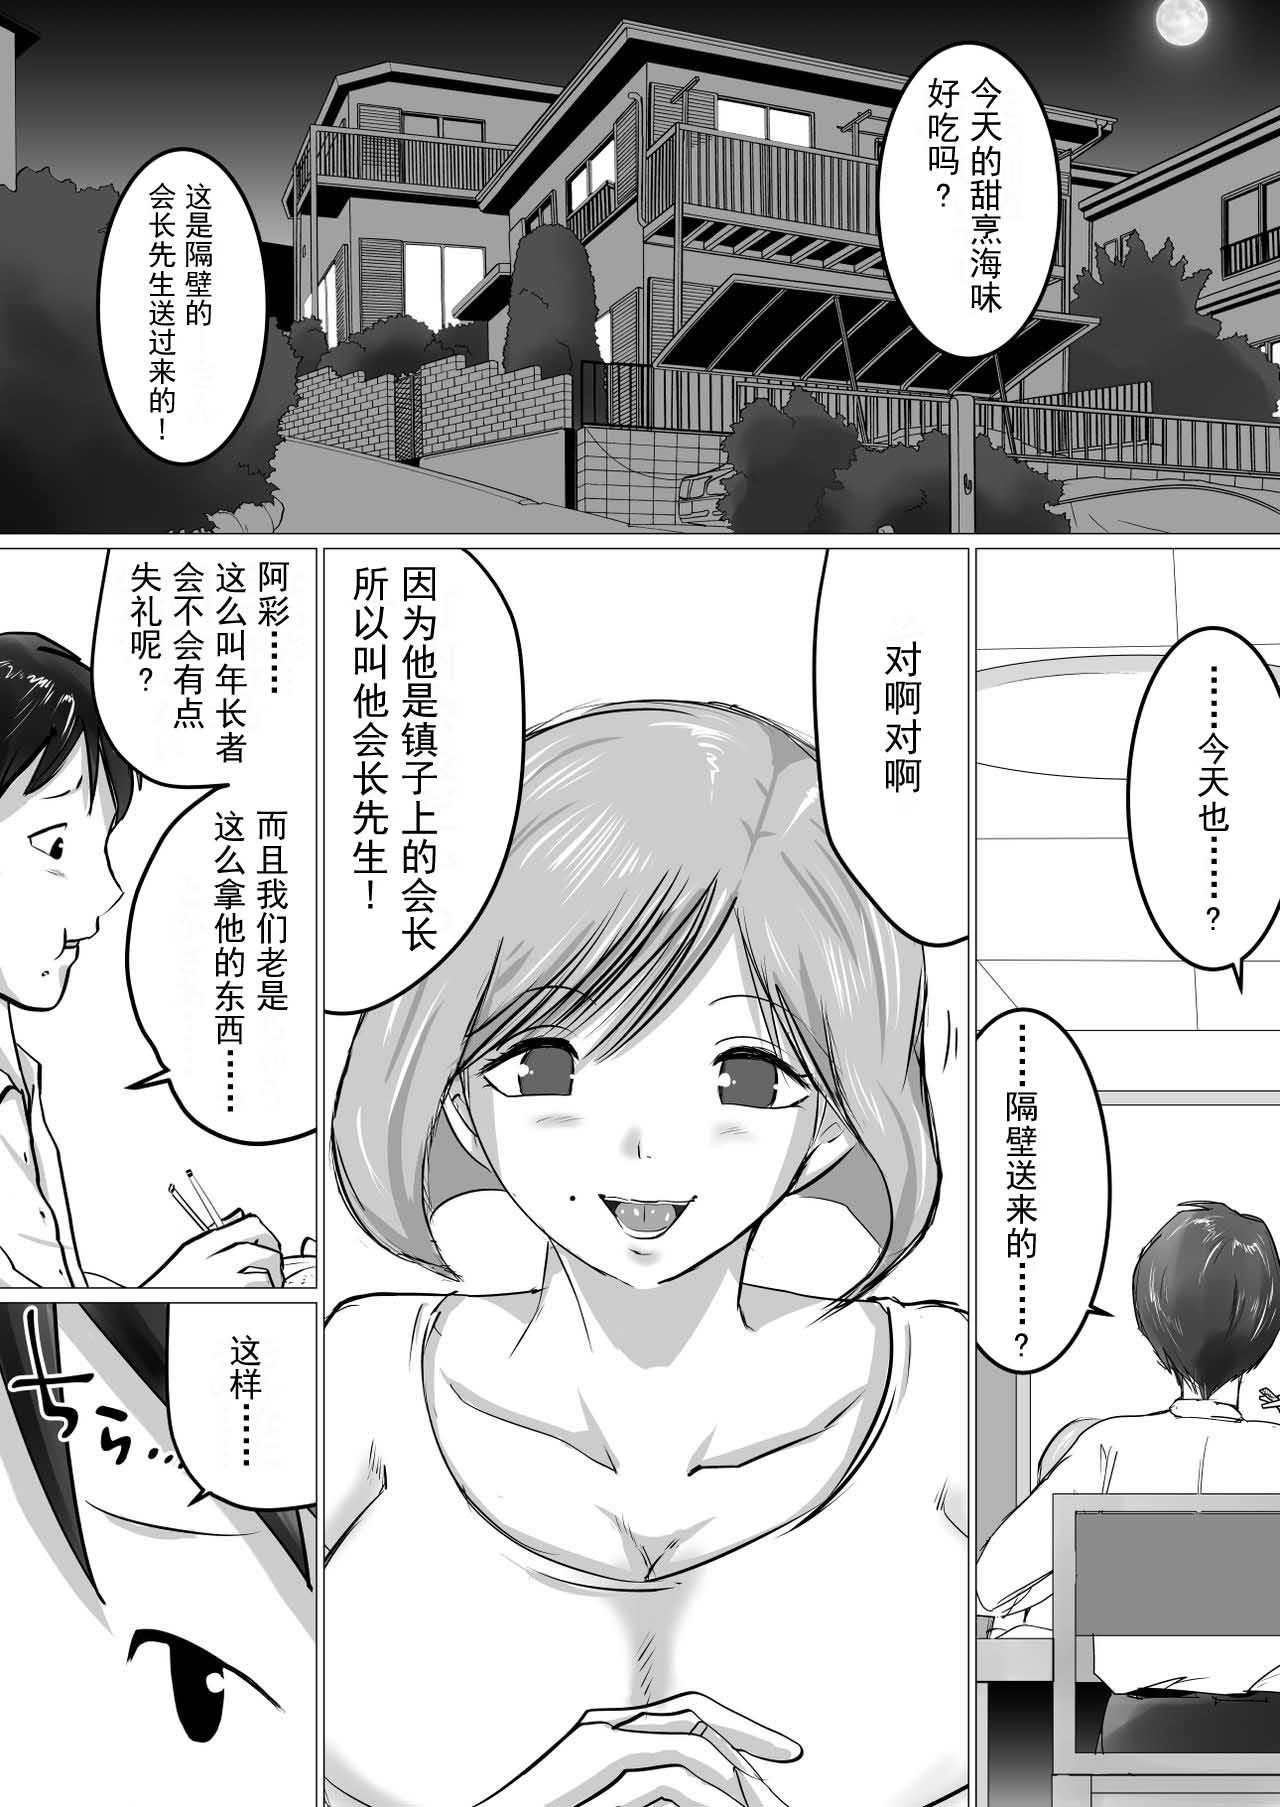 Red Head [Makoto Shiyaka] Rinjin ni Dakare Tsuzukeru to iu koto[Chinese]【不可视汉化】 - Original Asshole - Page 2